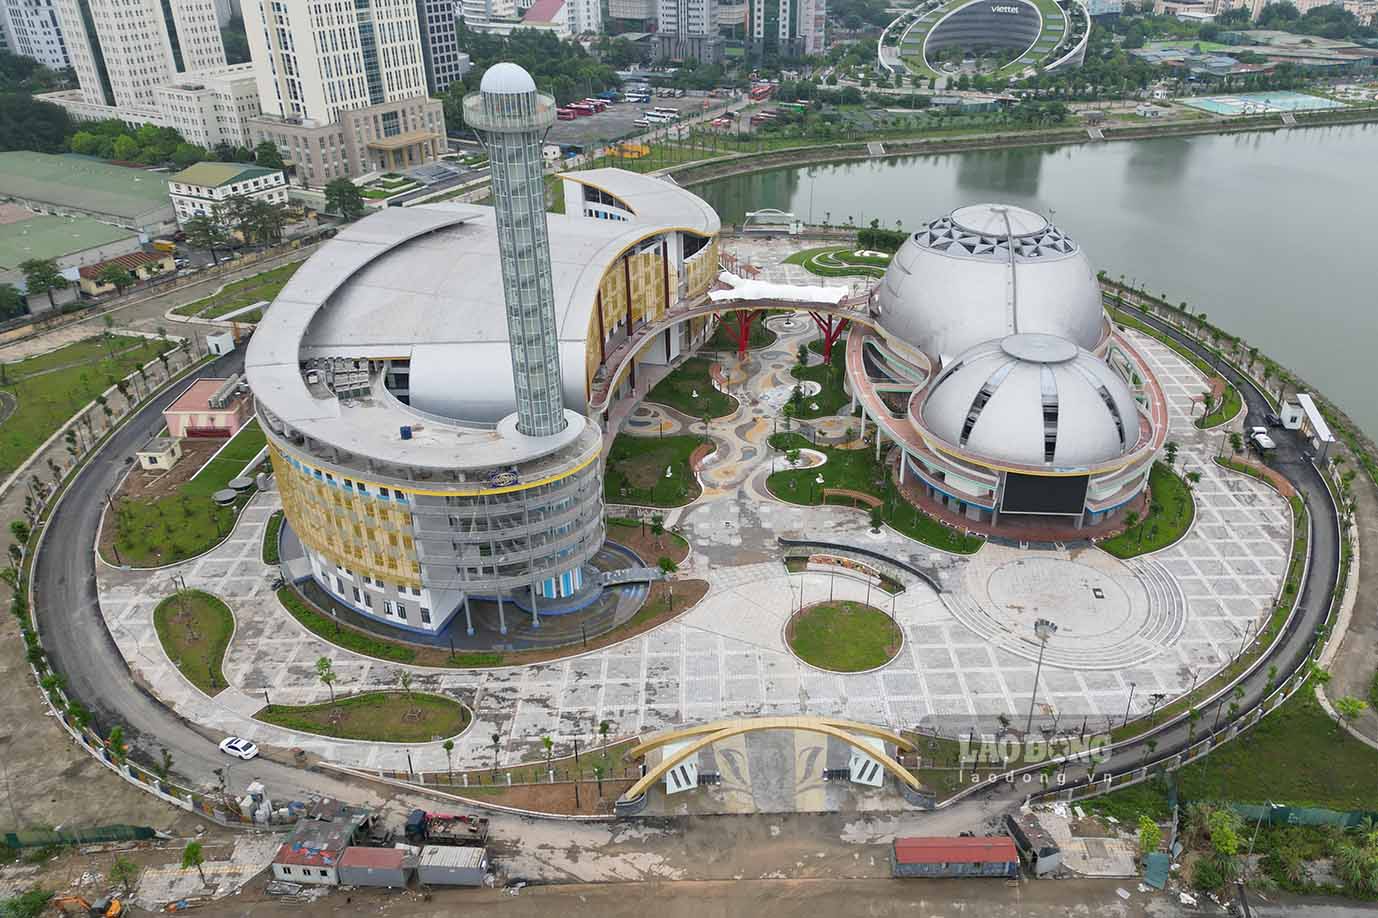 Cung Thiếu nhi là một trong những công trình trọng điểm của Hà Nội giai đoạn 2020 – 2025, được kỳ vọng sẽ là nơi đáp ứng nhu cầu vui chơi, thi đấu thể thao rèn luyện thể chất, giao lưu văn hóa văn nghệ của thiếu nhi Thủ đô, tạo môi trường phát triển tài năng tương lai của thành phố.